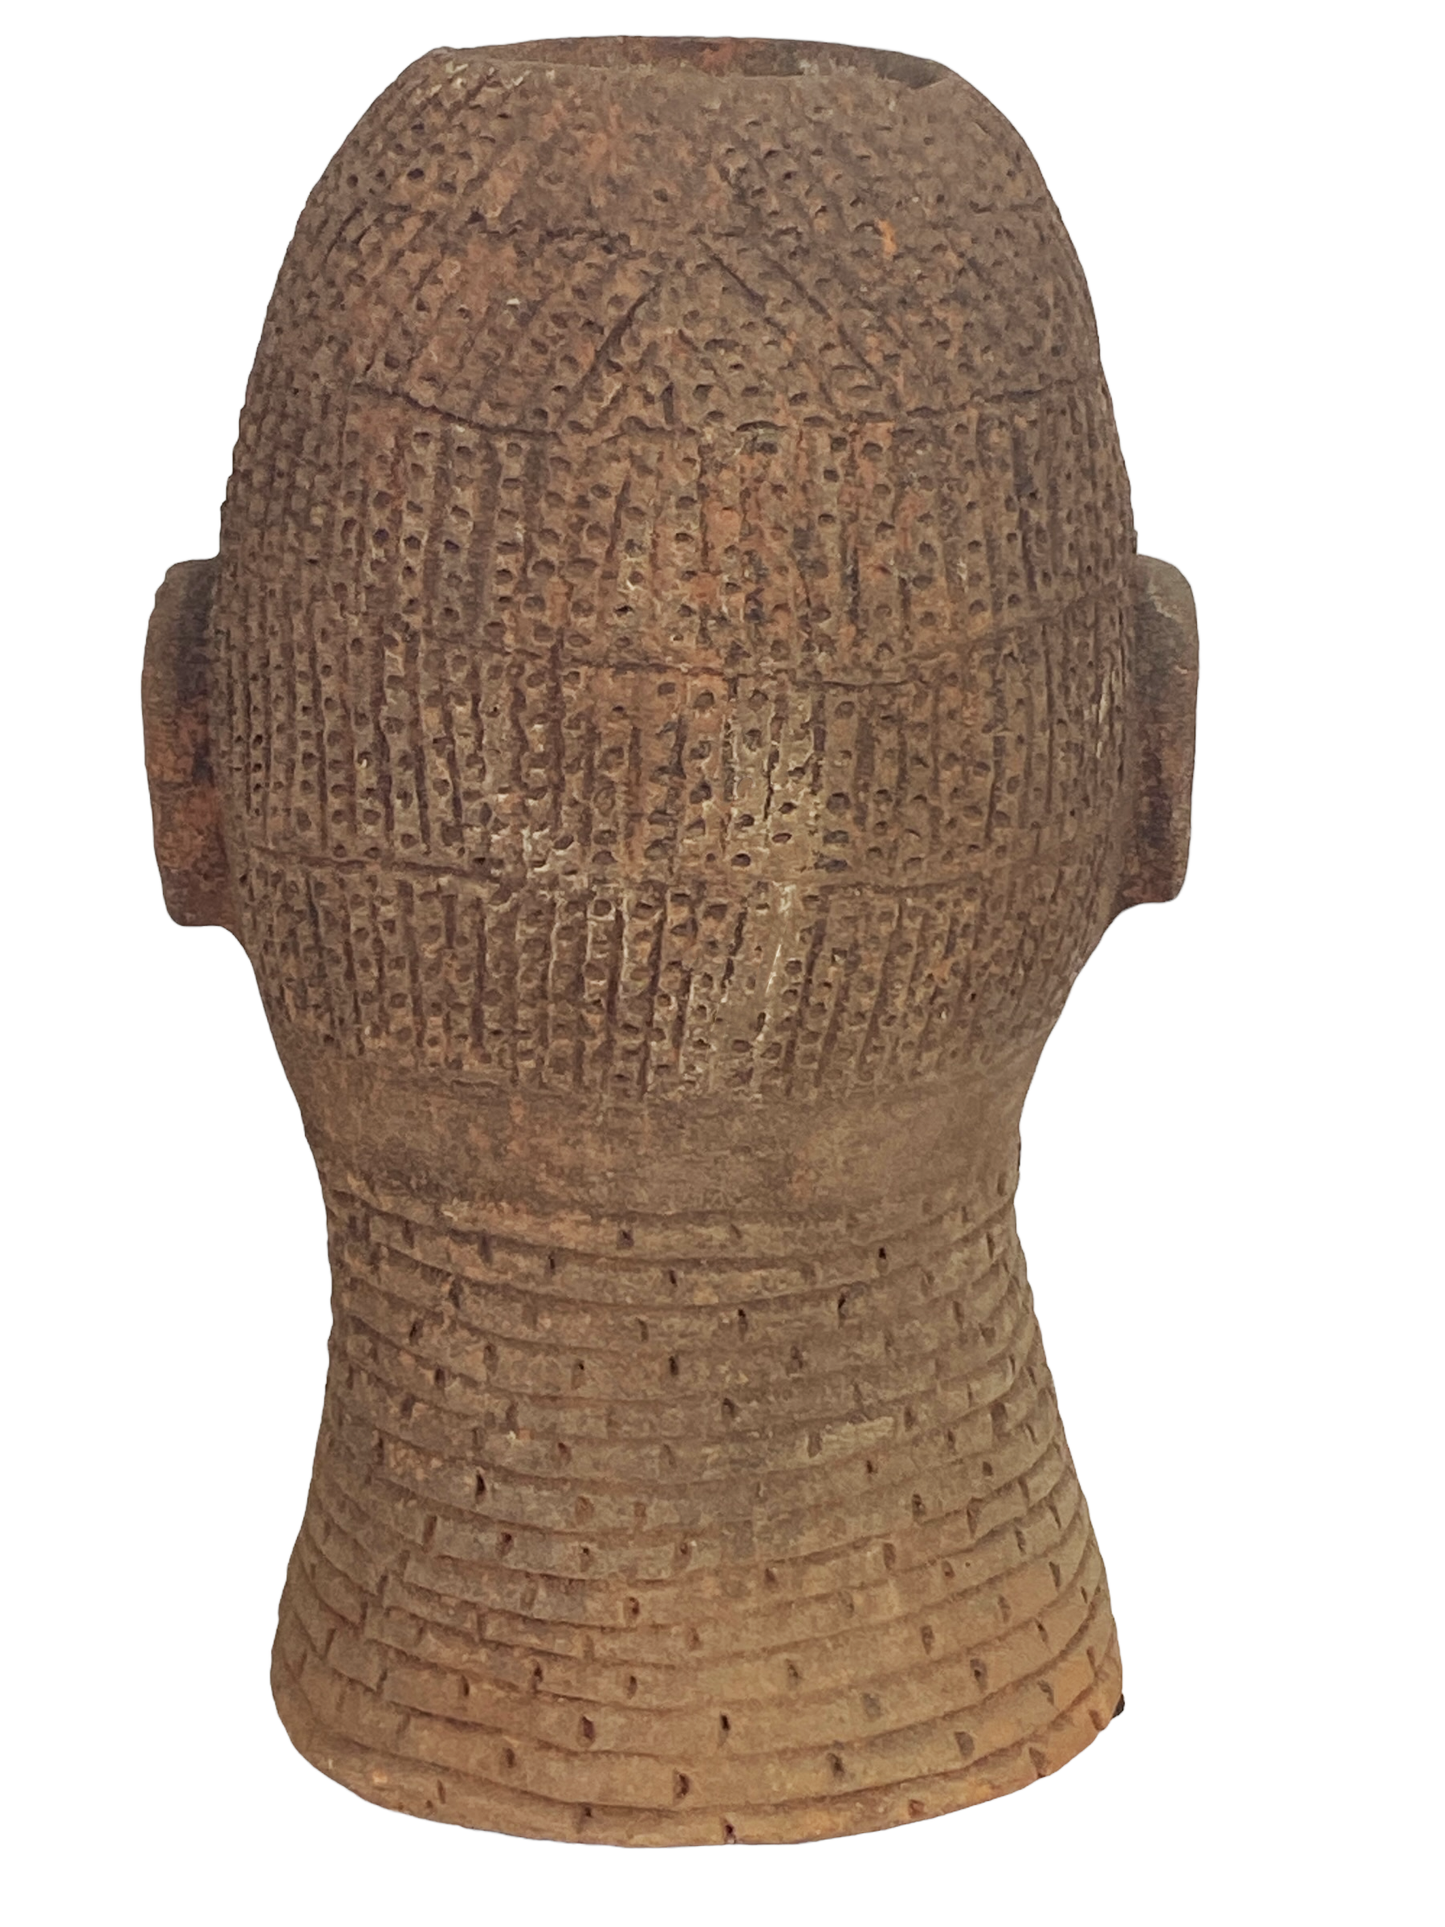 #8356 Large Ife Clay / Terracotta Head of Oni Yoruba Nigeria African 18" H